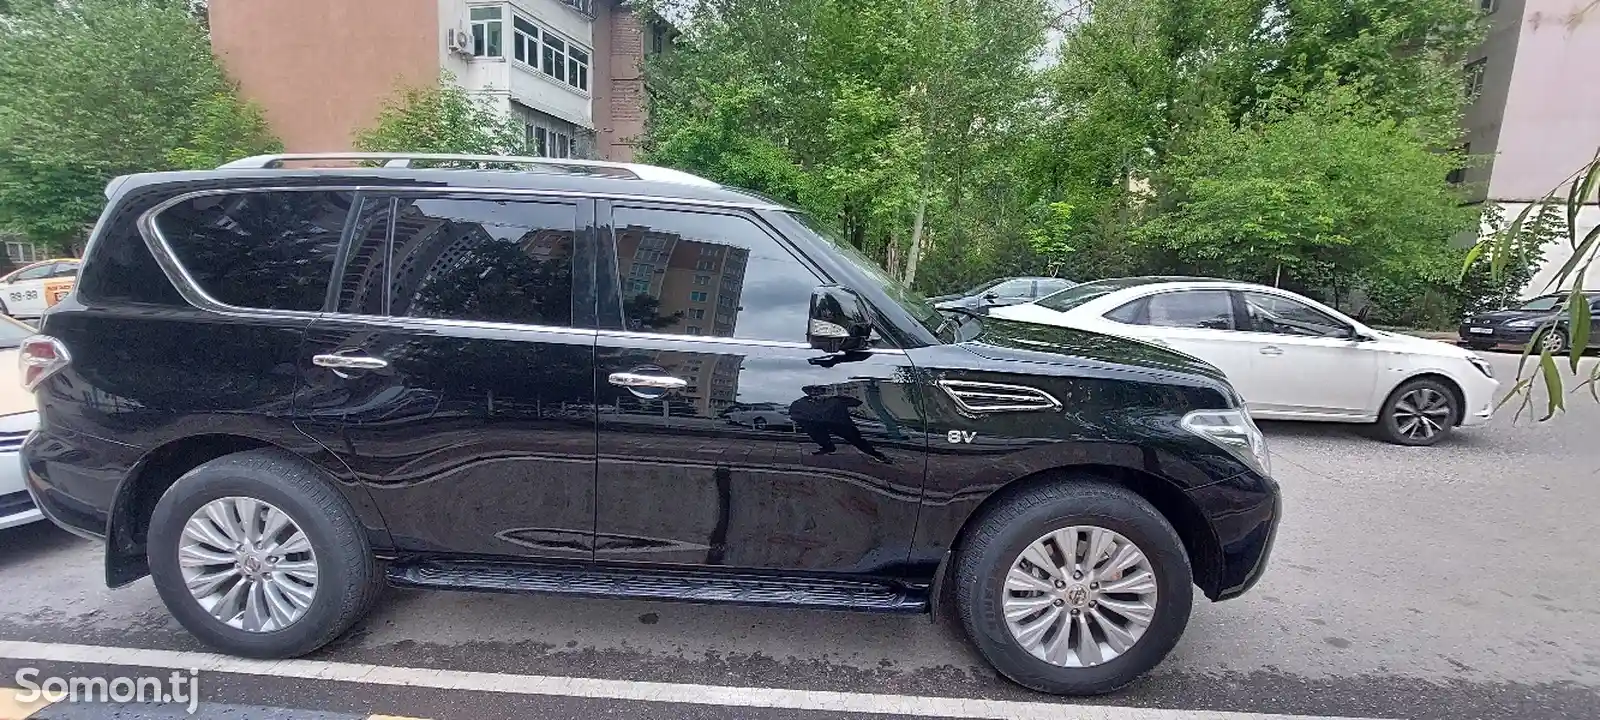 Nissan Patrol, 2015-4